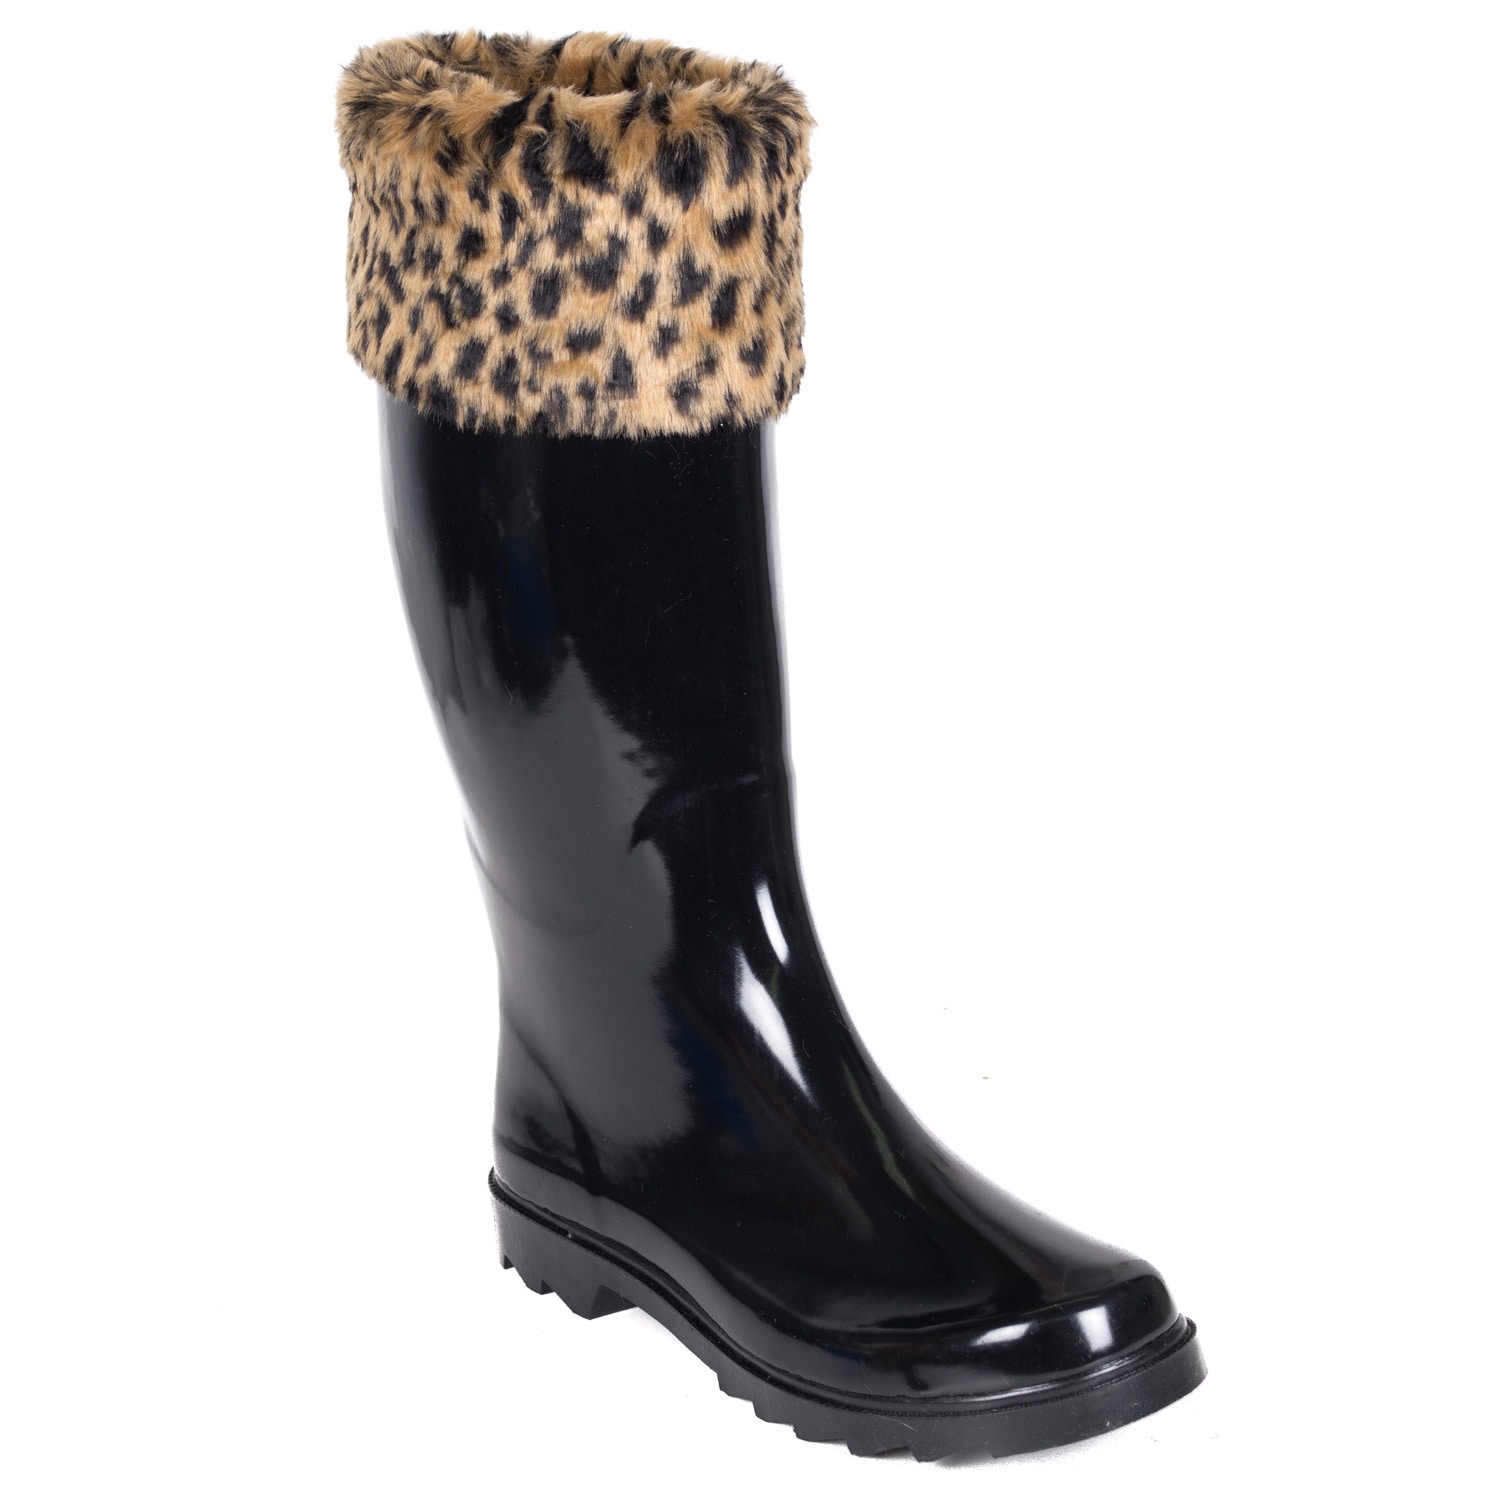 Women's Rubber Rain Boots Black Faux 